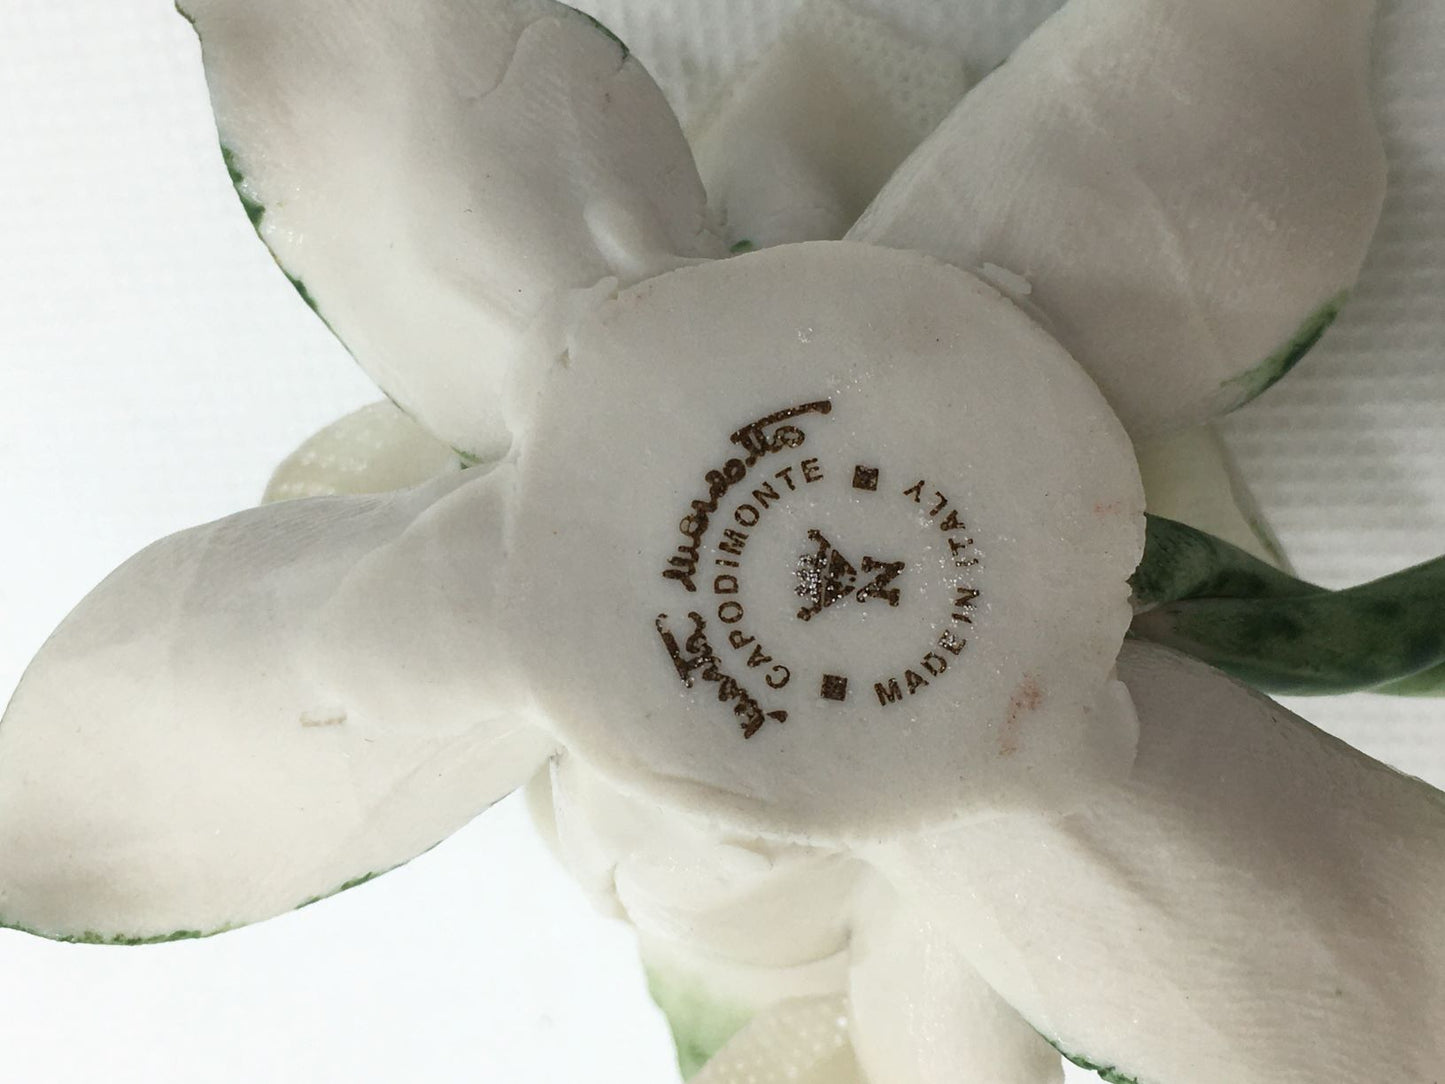 Tralcio portacandelina in ceramica di Capodimonte, fatto e decorato a mano. Firmato da Marta Marzotto, made in Italy. Dimensioni: cm 11 x 7 x 4,5 h